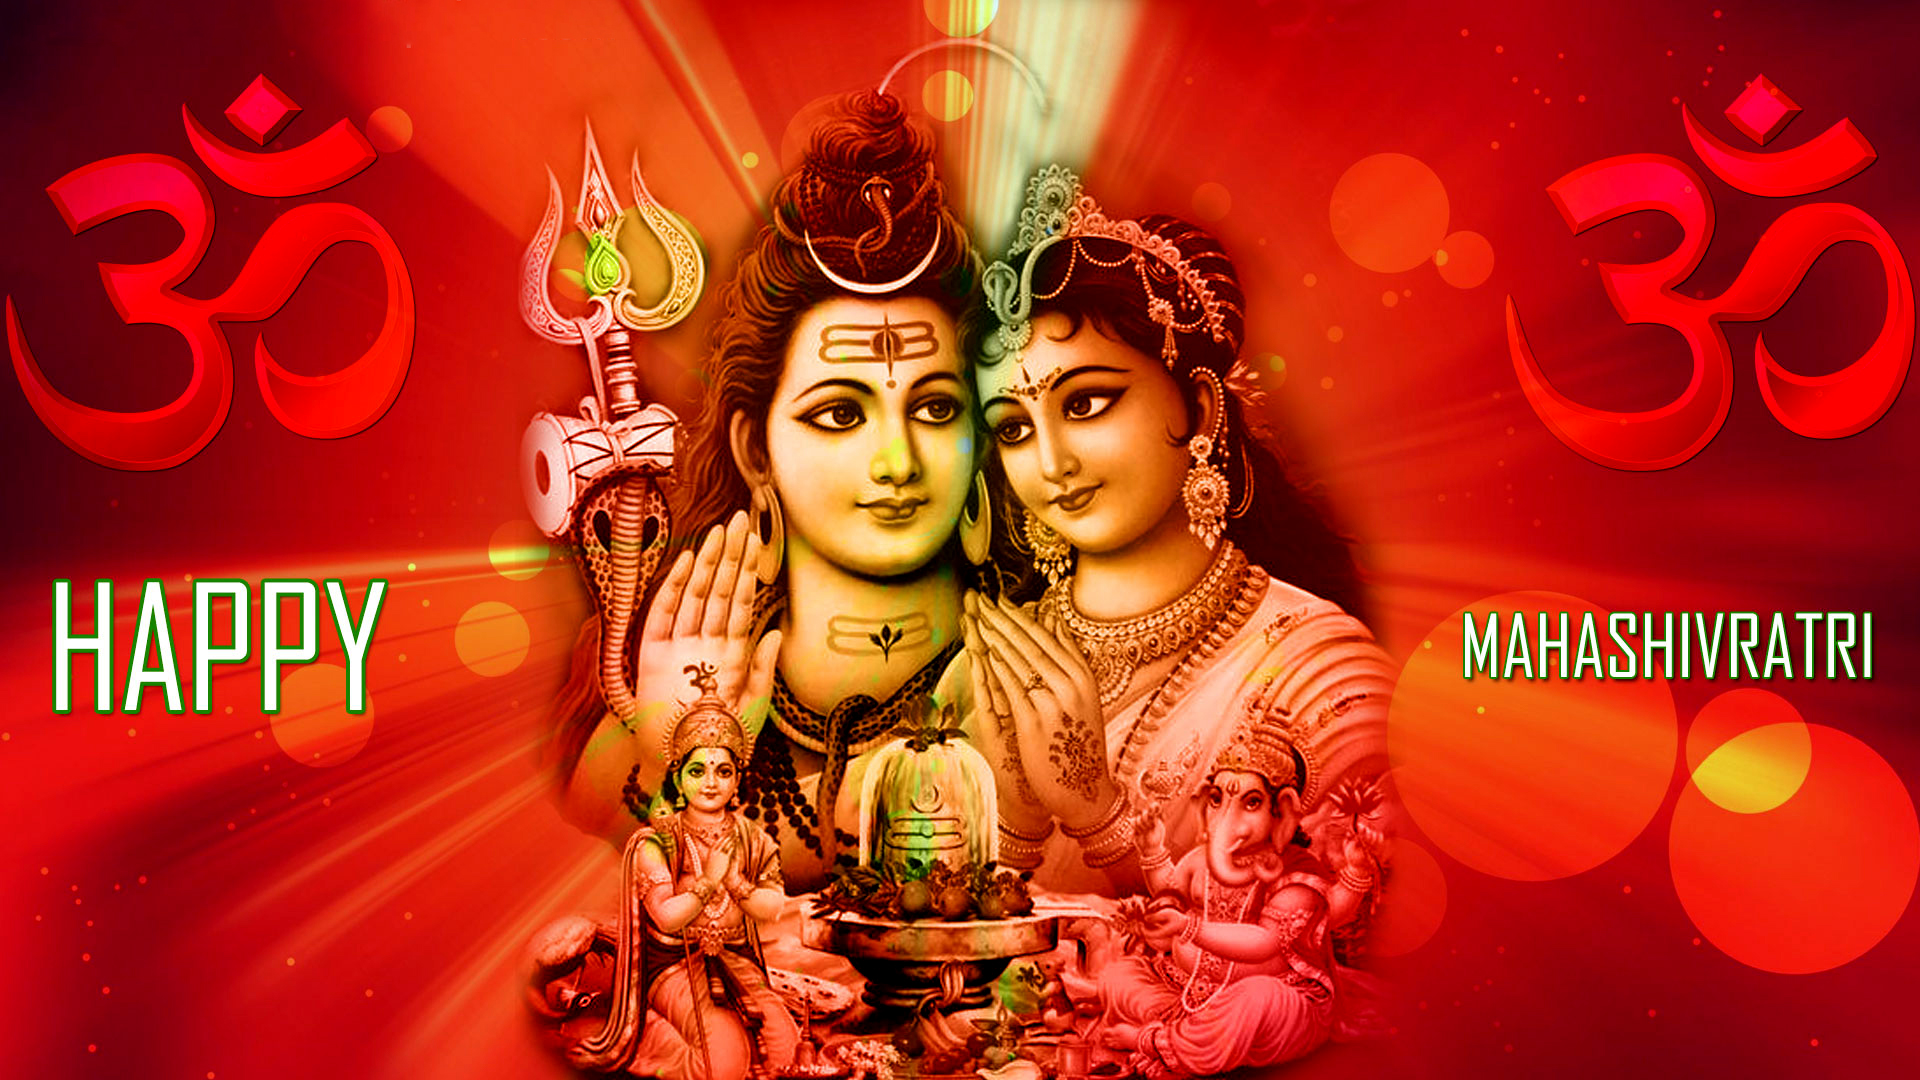 Shivratri Shiva Parvati Full Hd Wallpapers 1080p